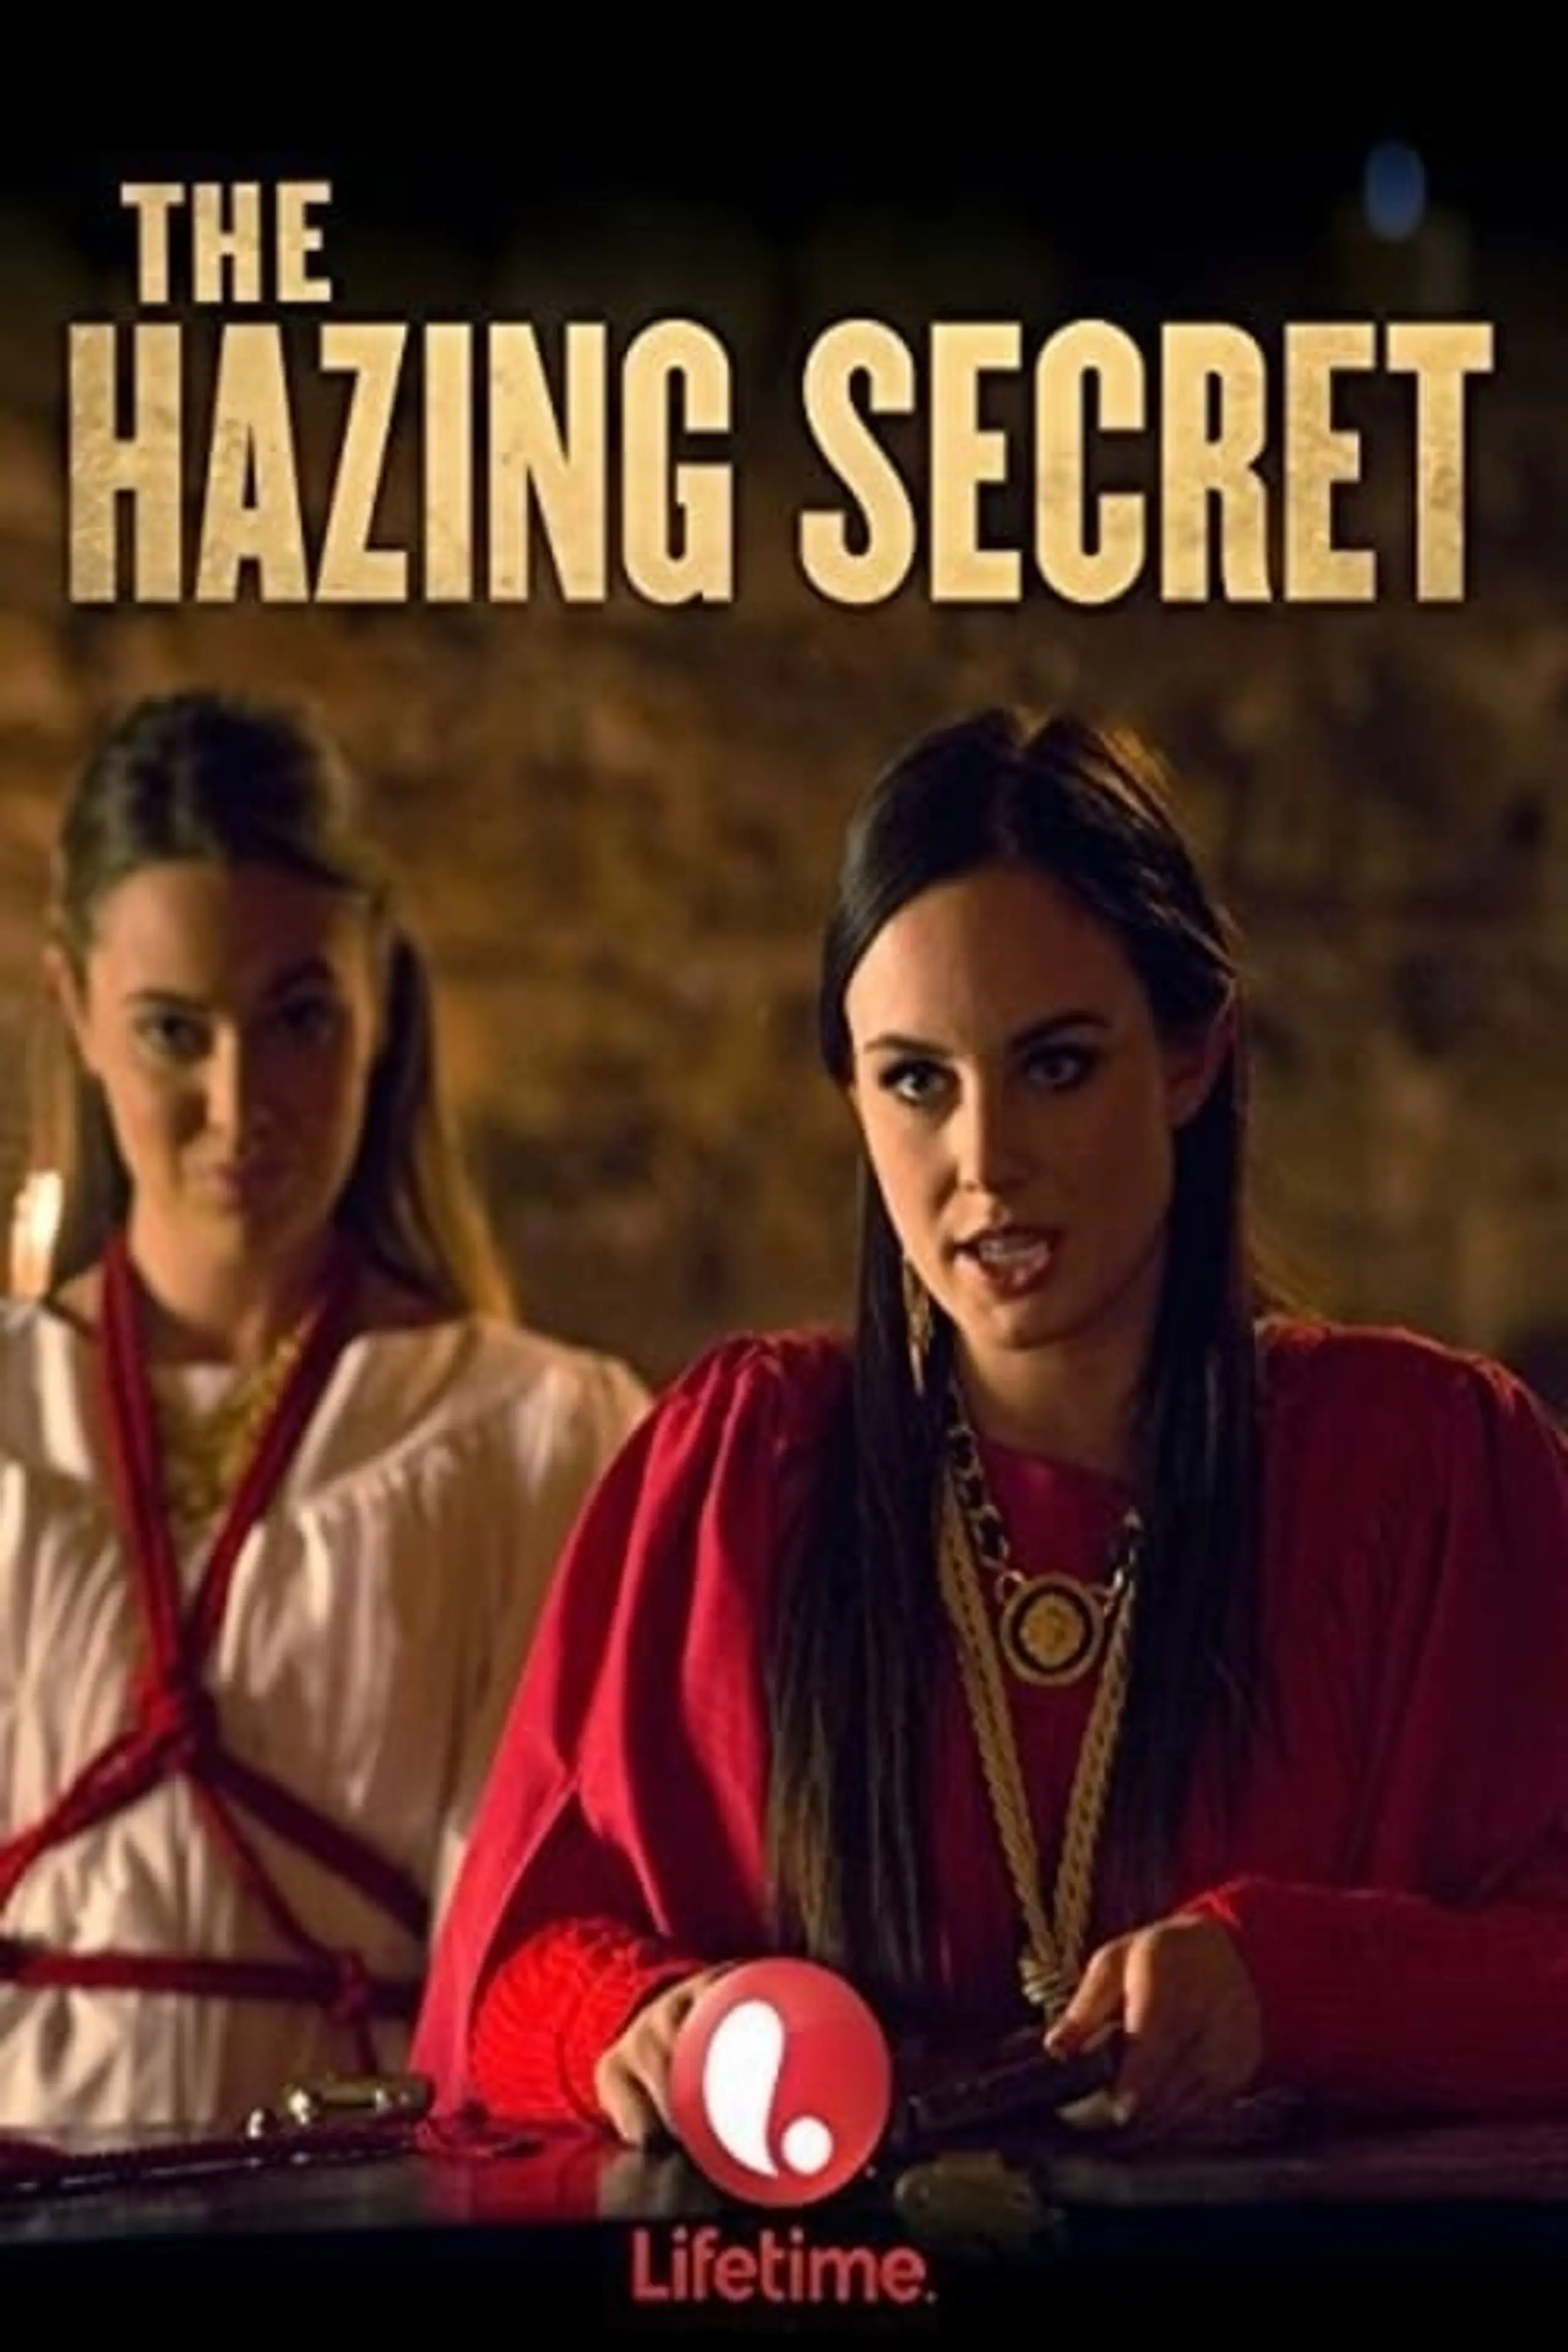 The Hazing Secret